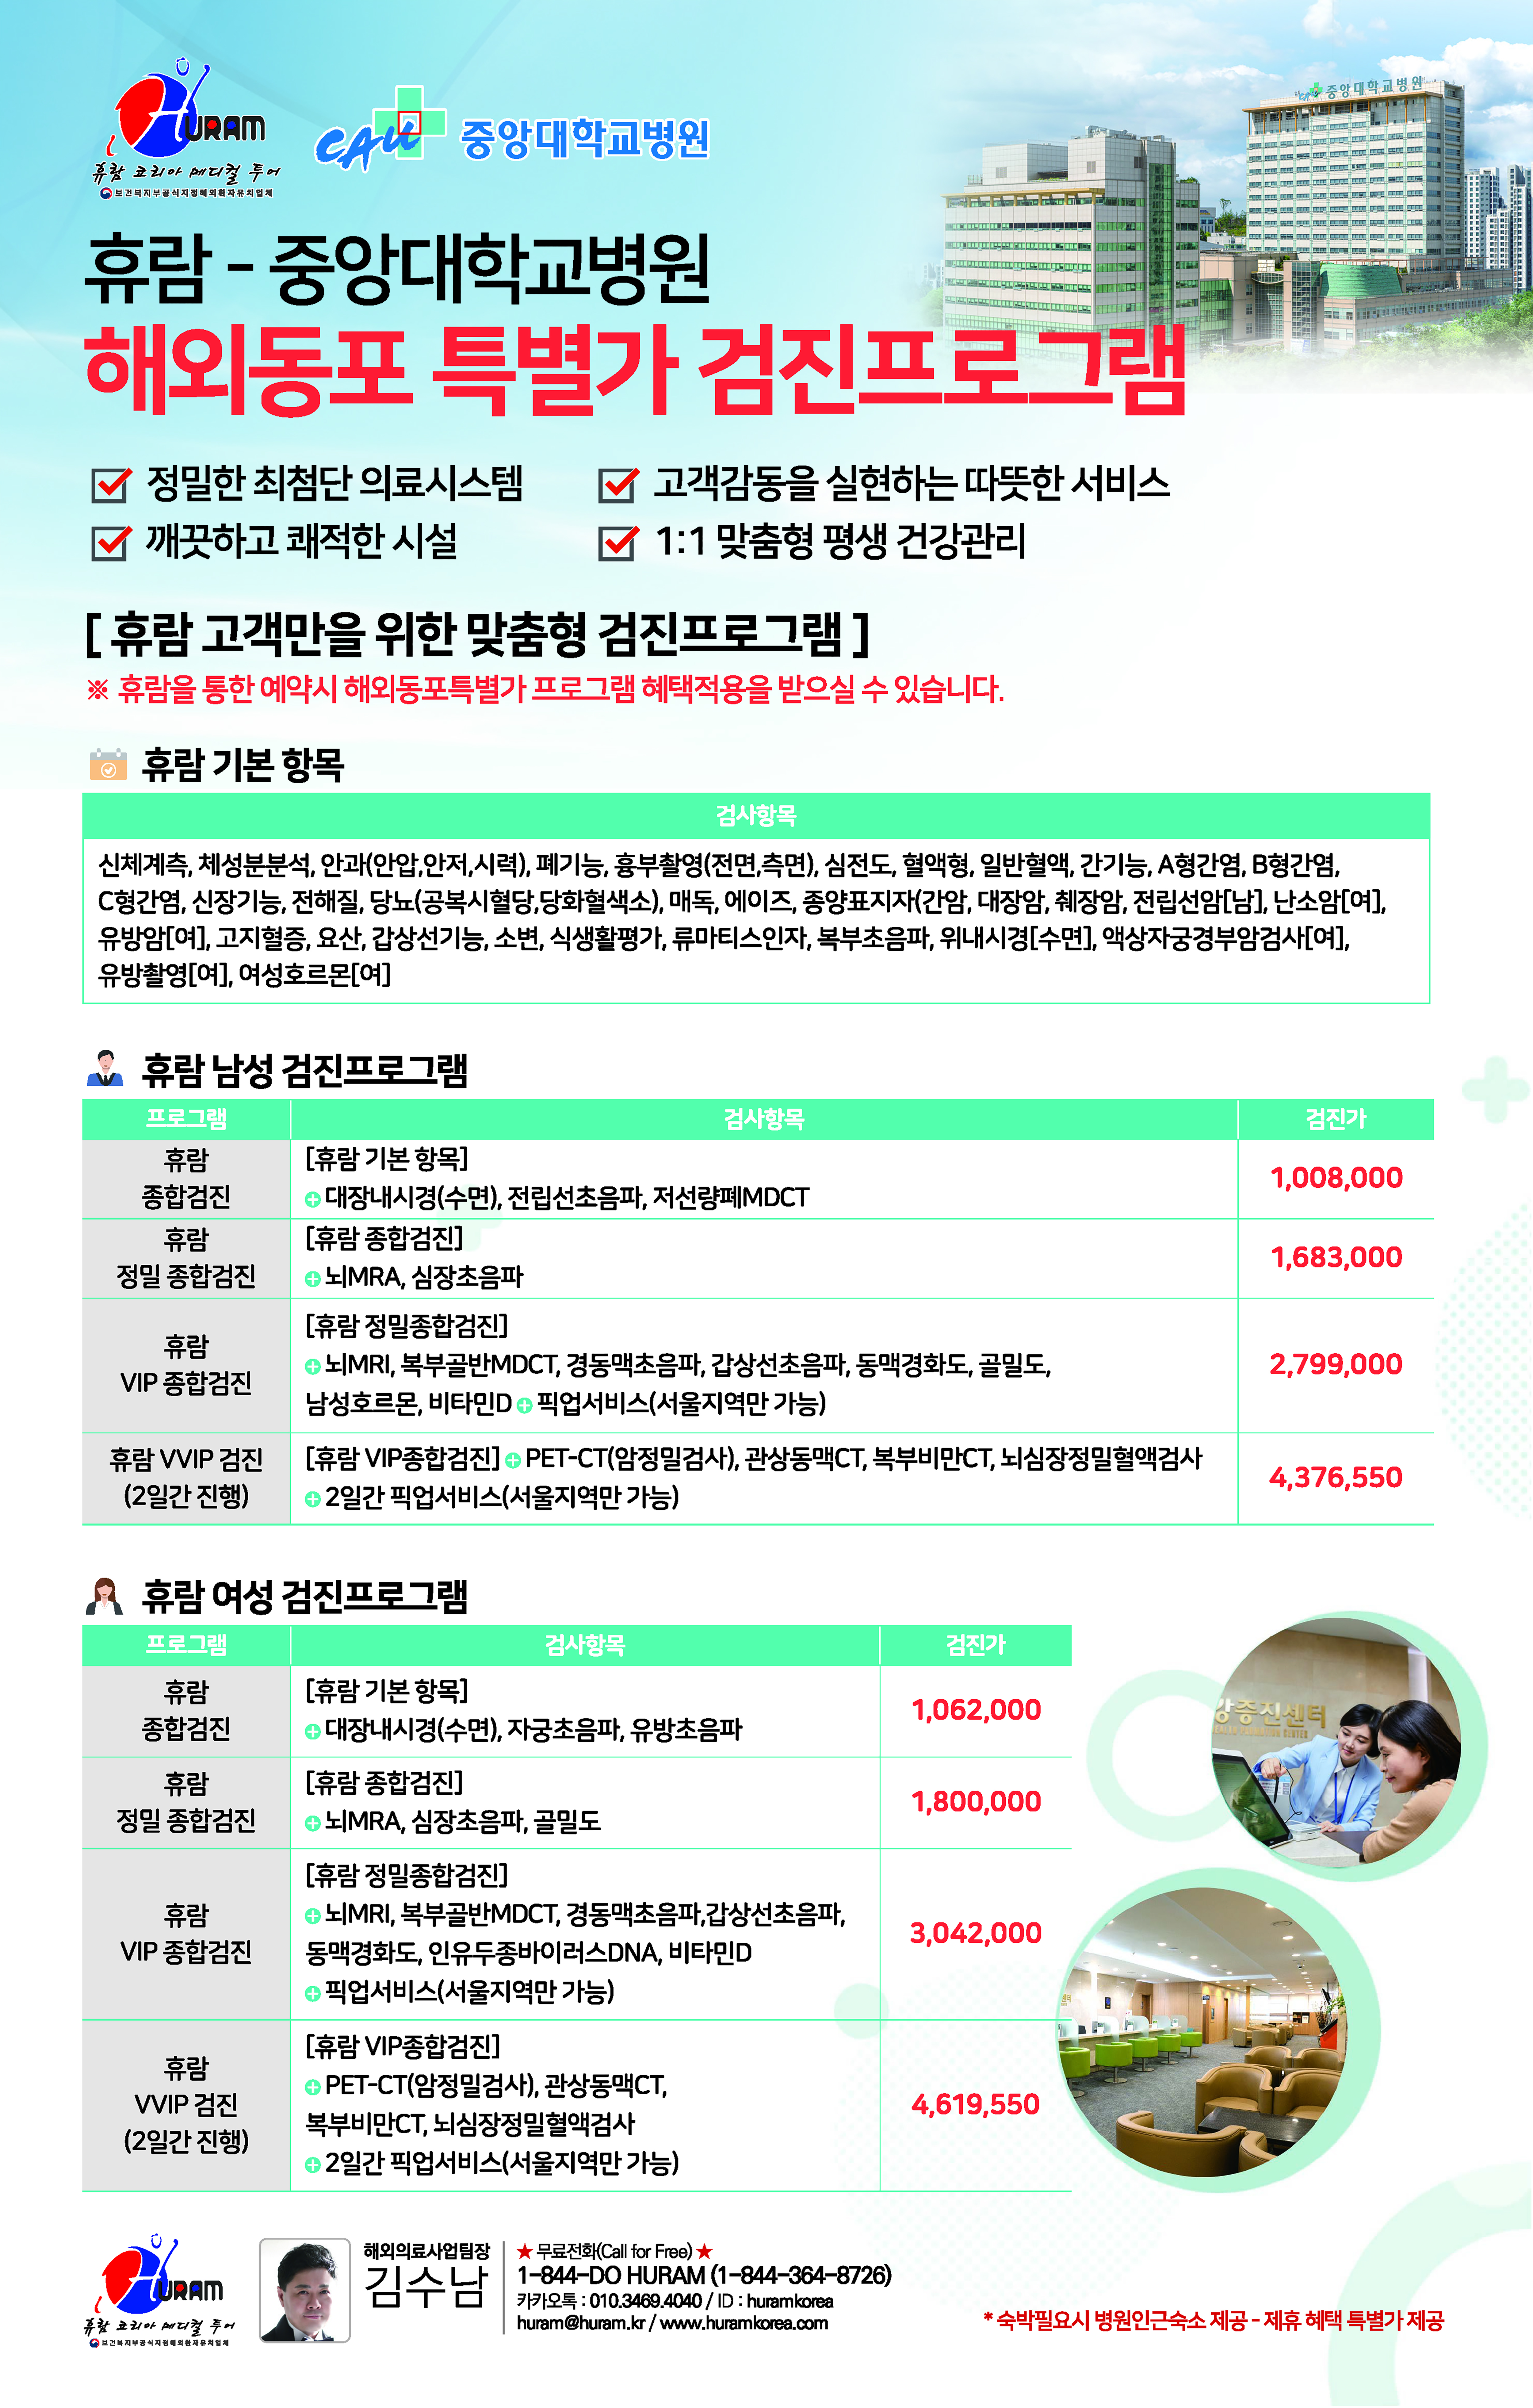 휴람 중앙대학교병원 해외동포특별가 프로그램 전면광고